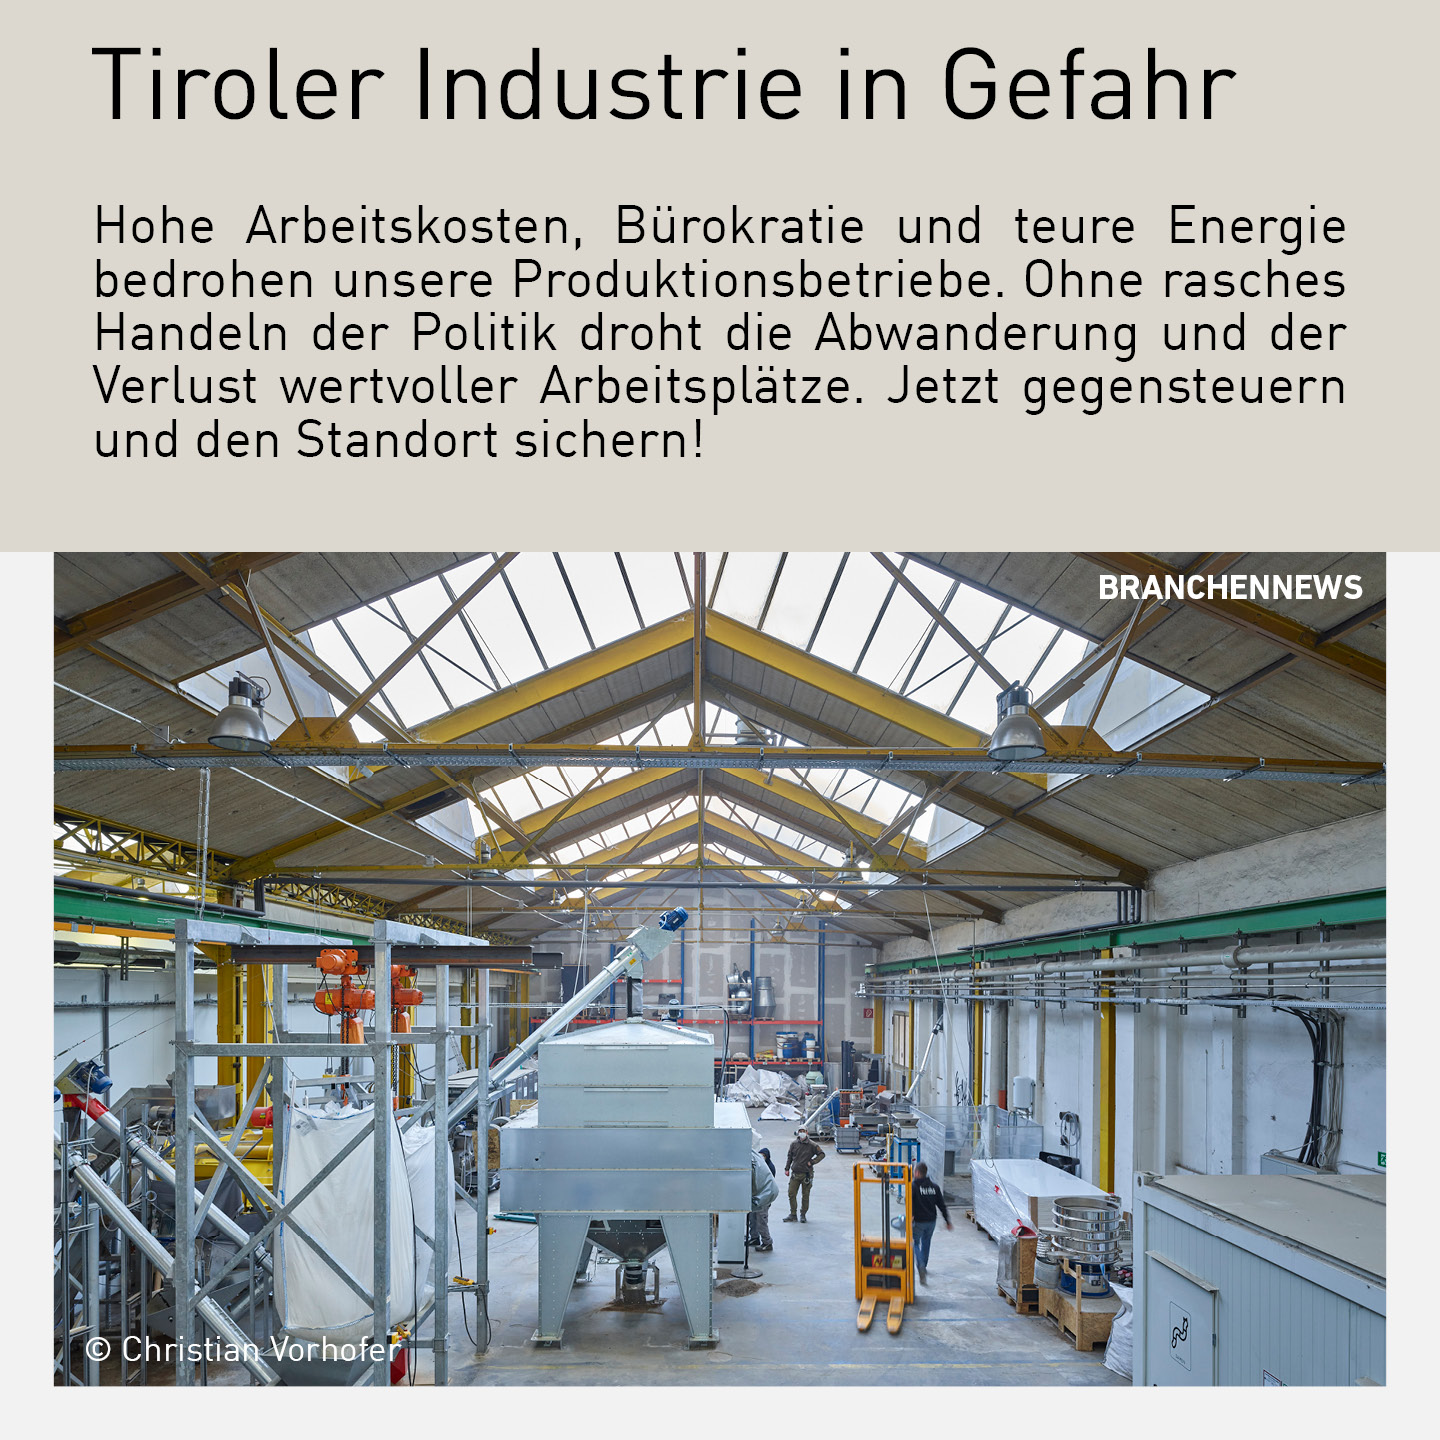 Industriehalle mit modernen Maschinen und Mitarbeitenden in Tirol, die die Herausforderungen hoher Arbeitskosten, Bürokratie und Energiekosten illustriert.